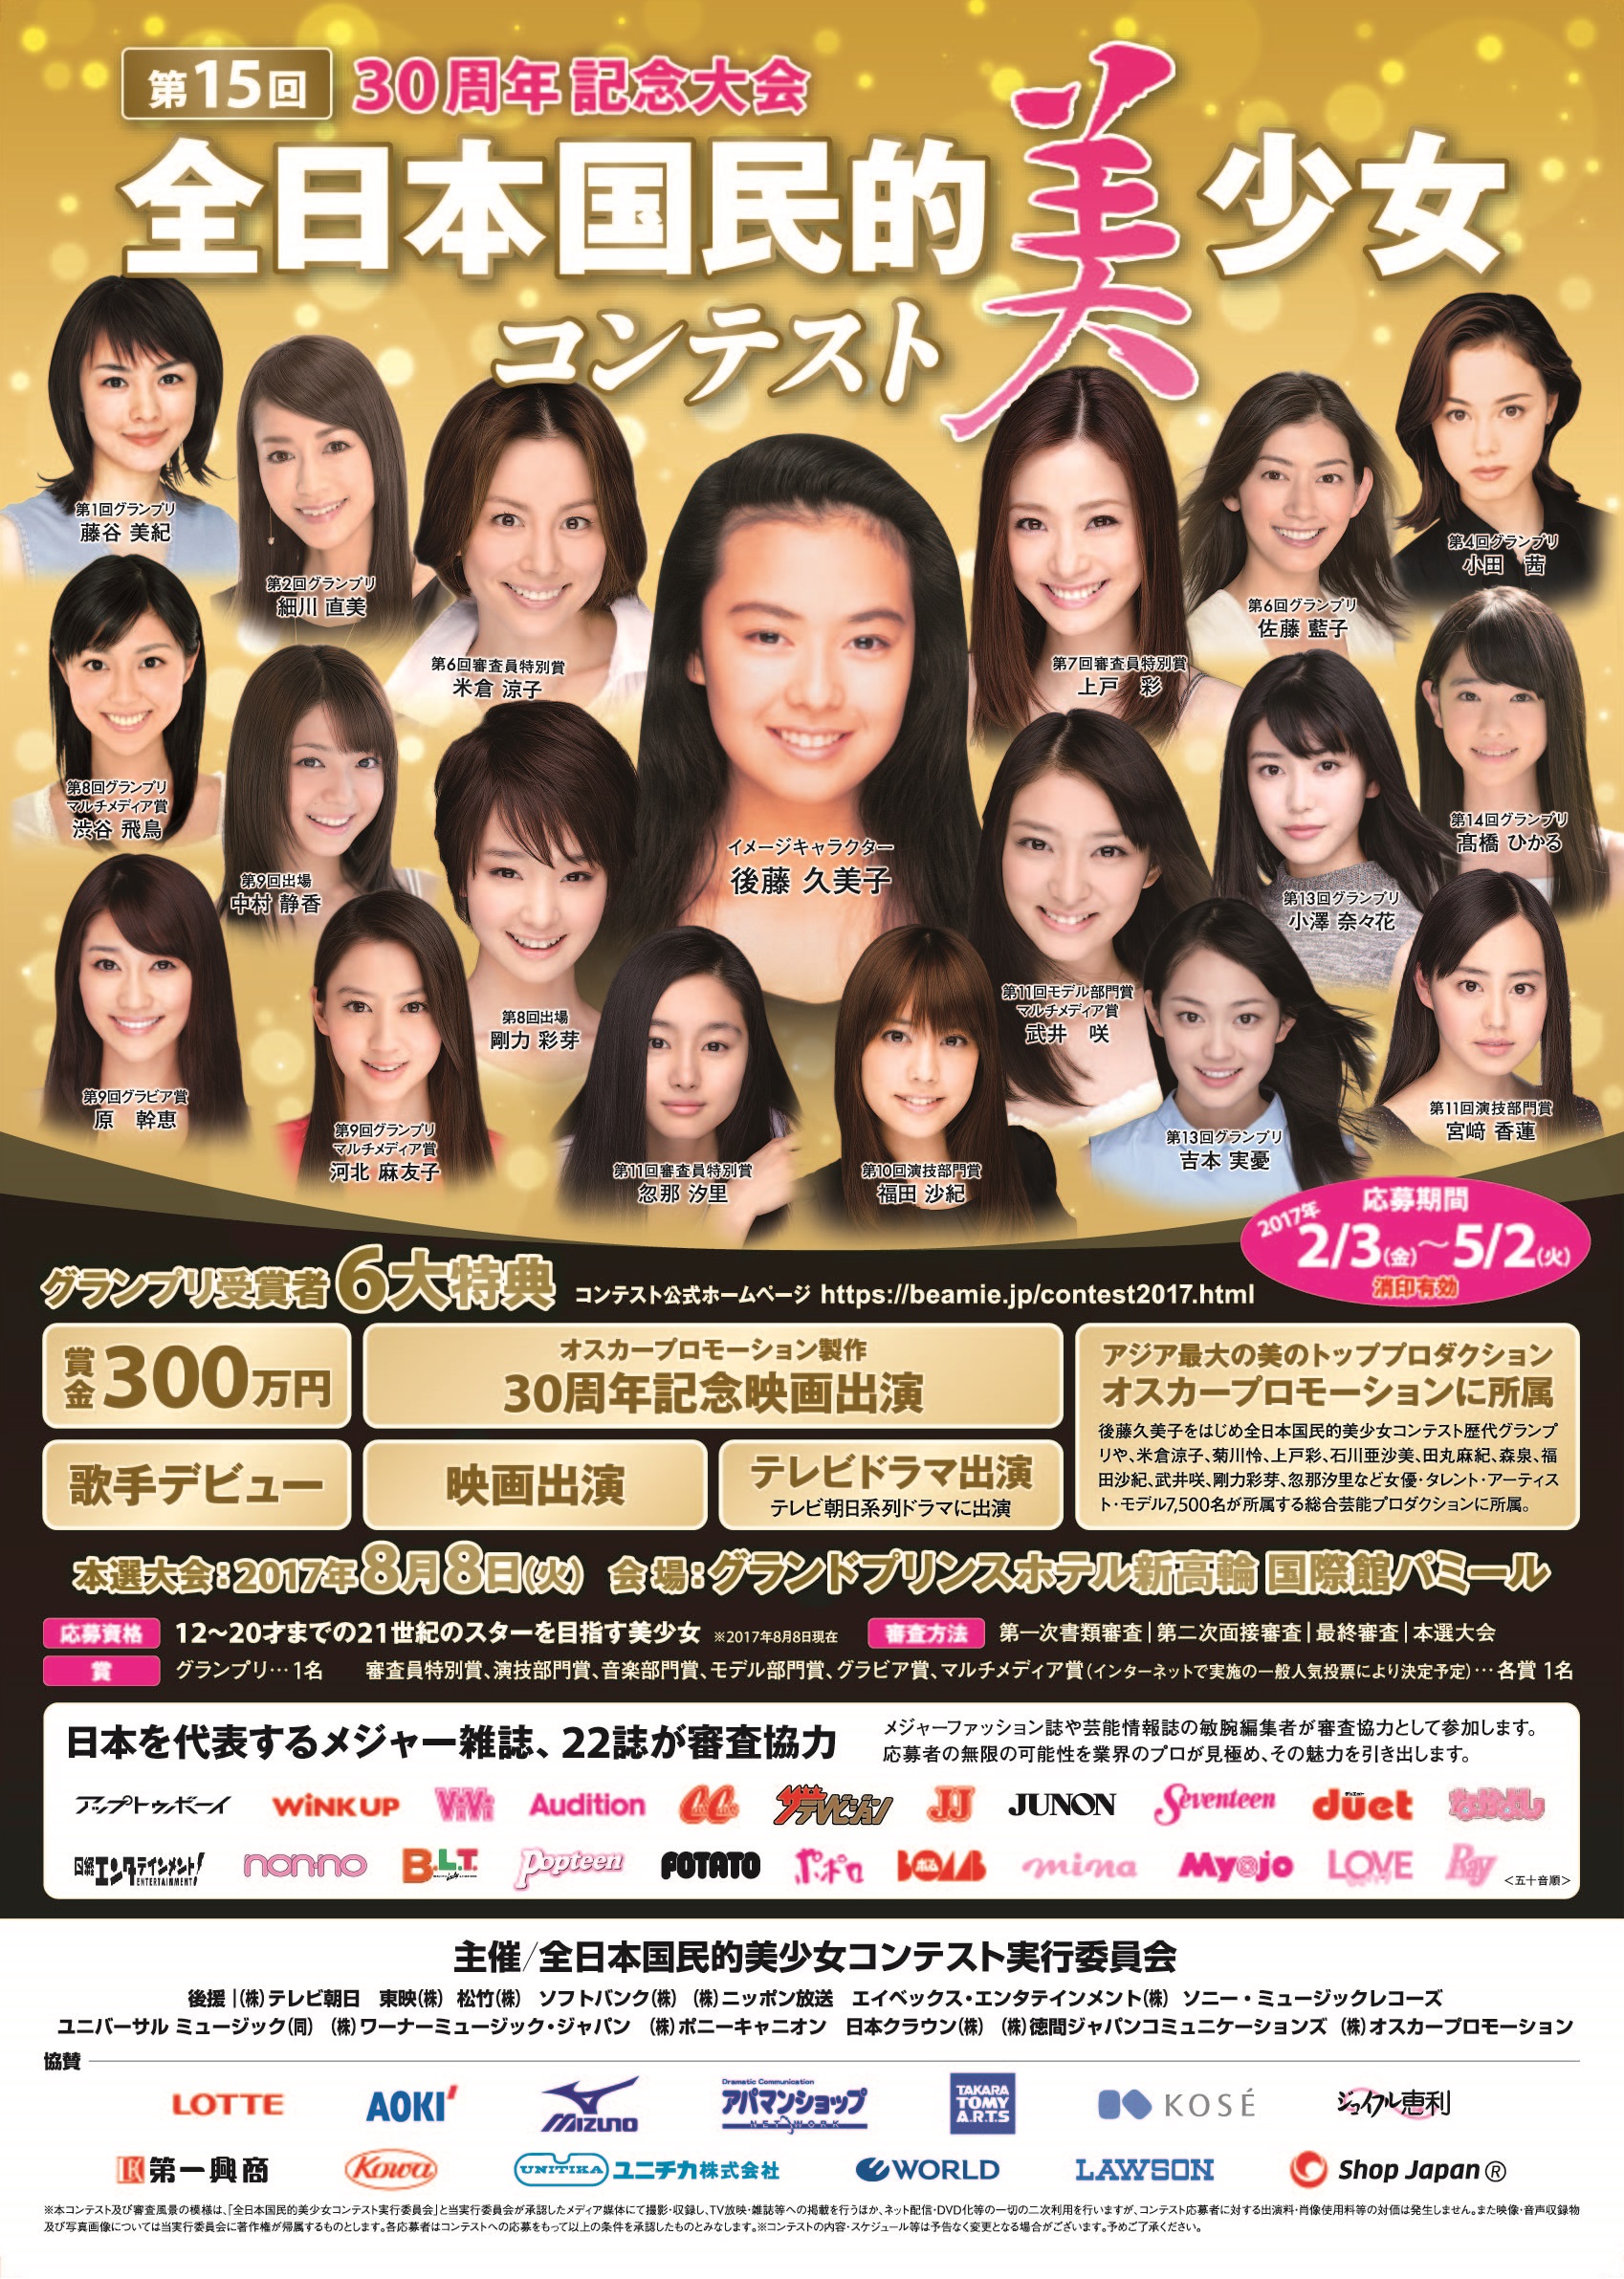 全日本国民的美少女コンテスト にdam ともから簡単エントリー 株式会社第一興商のプレスリリース